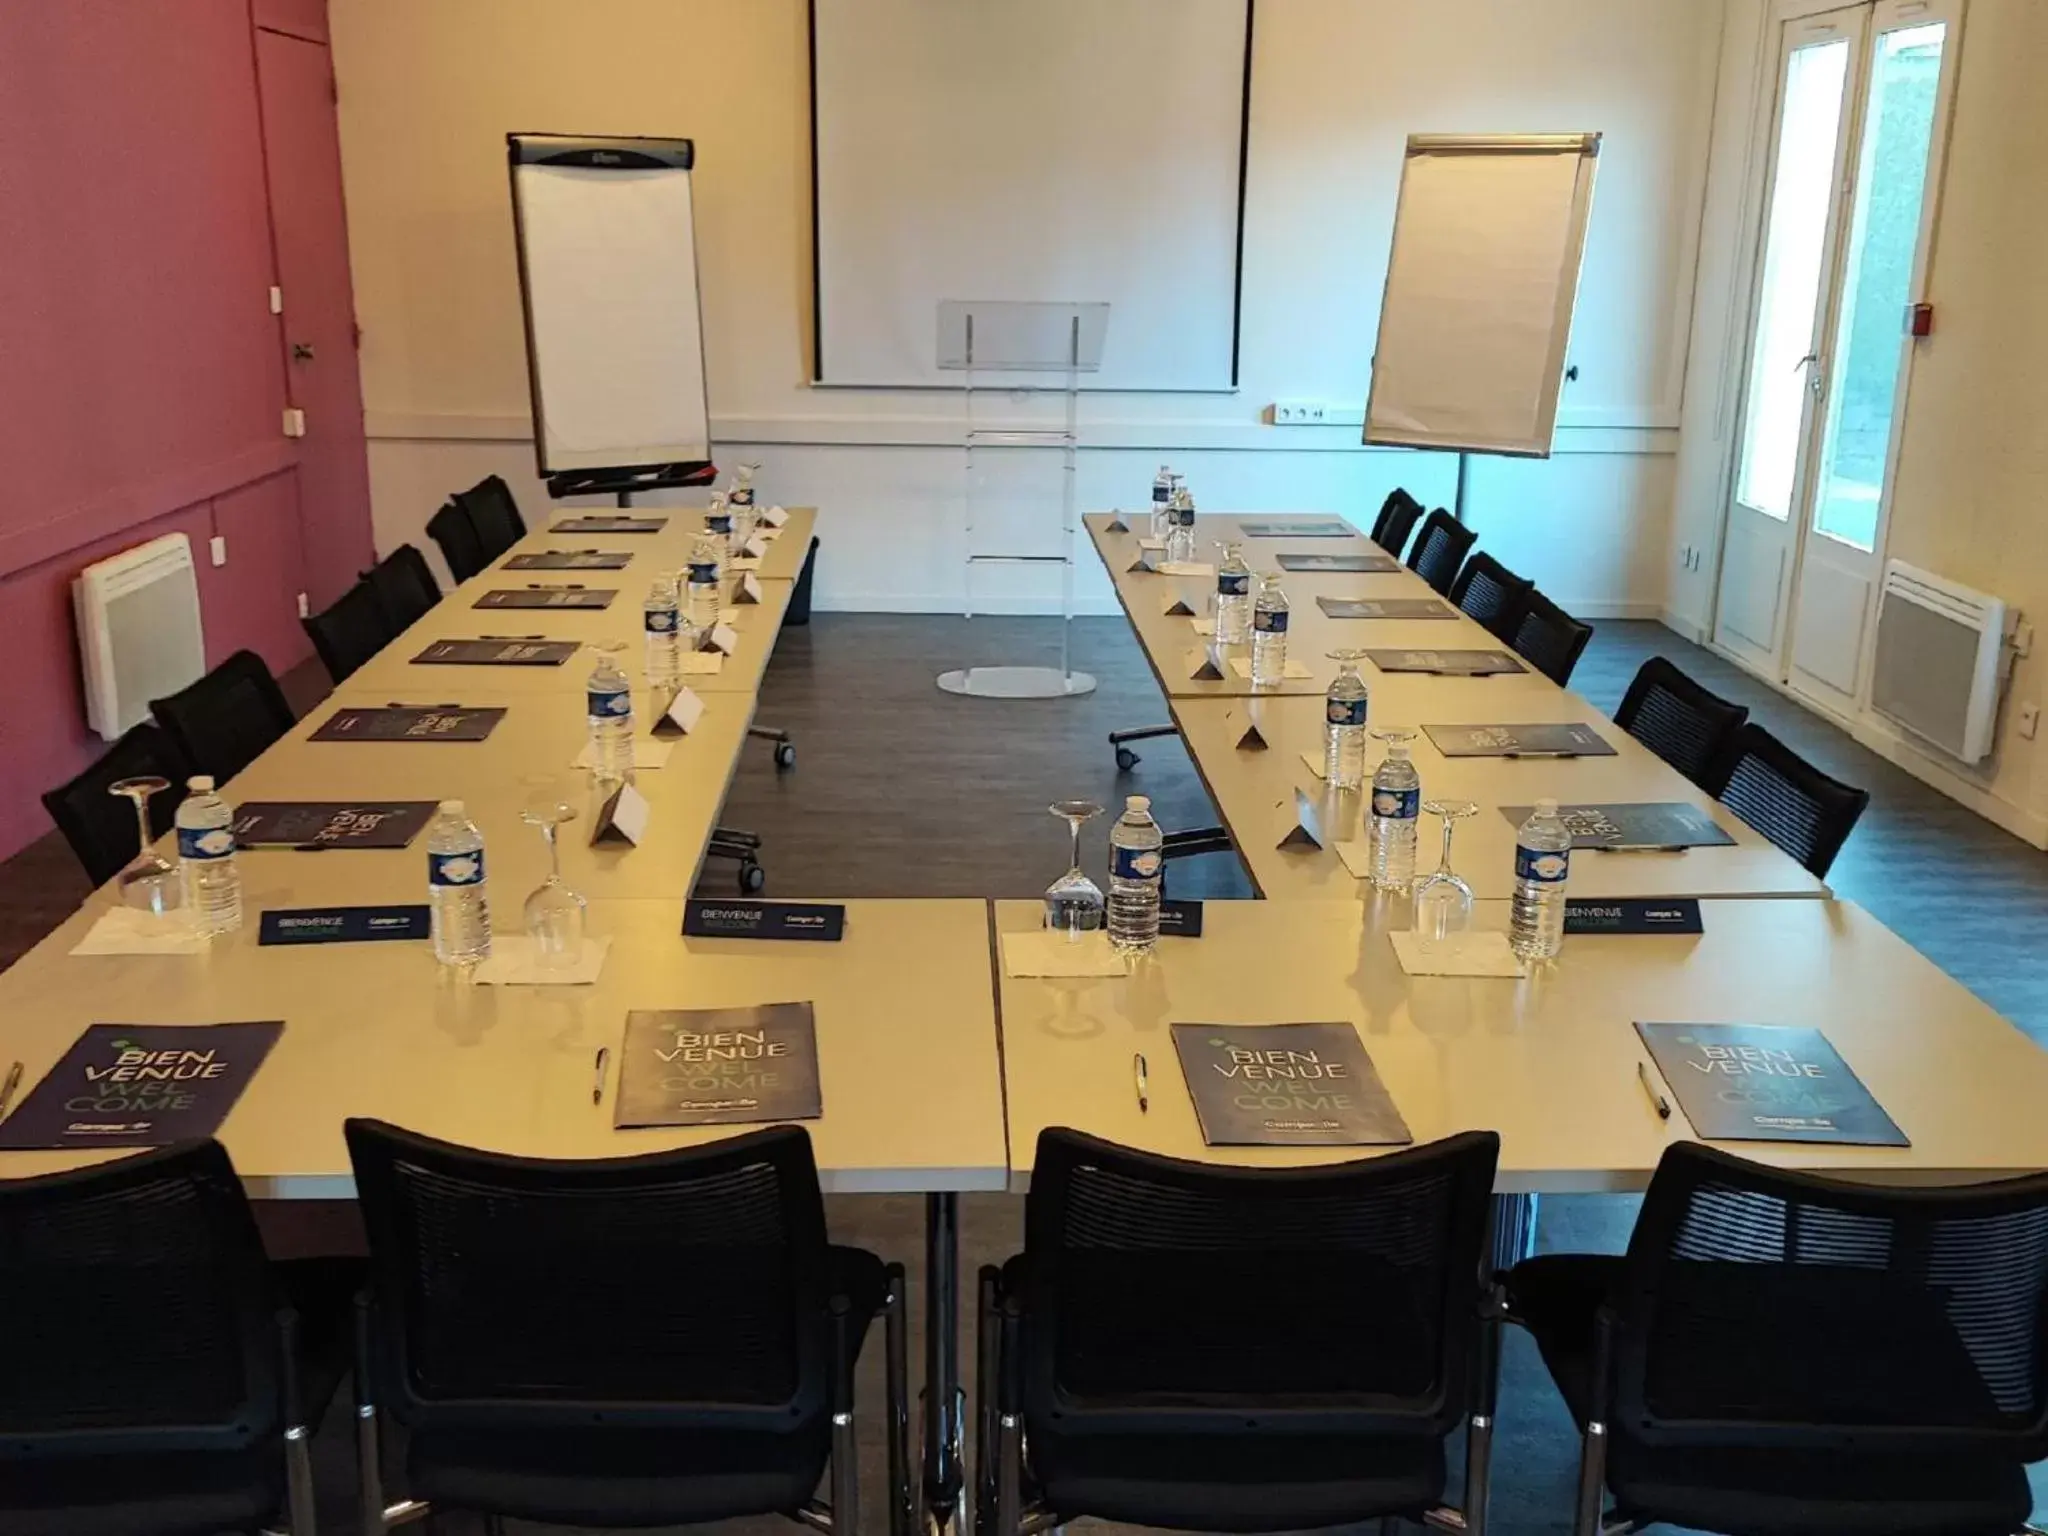 Meeting/conference room in Campanile Arras - Saint-Nicolas